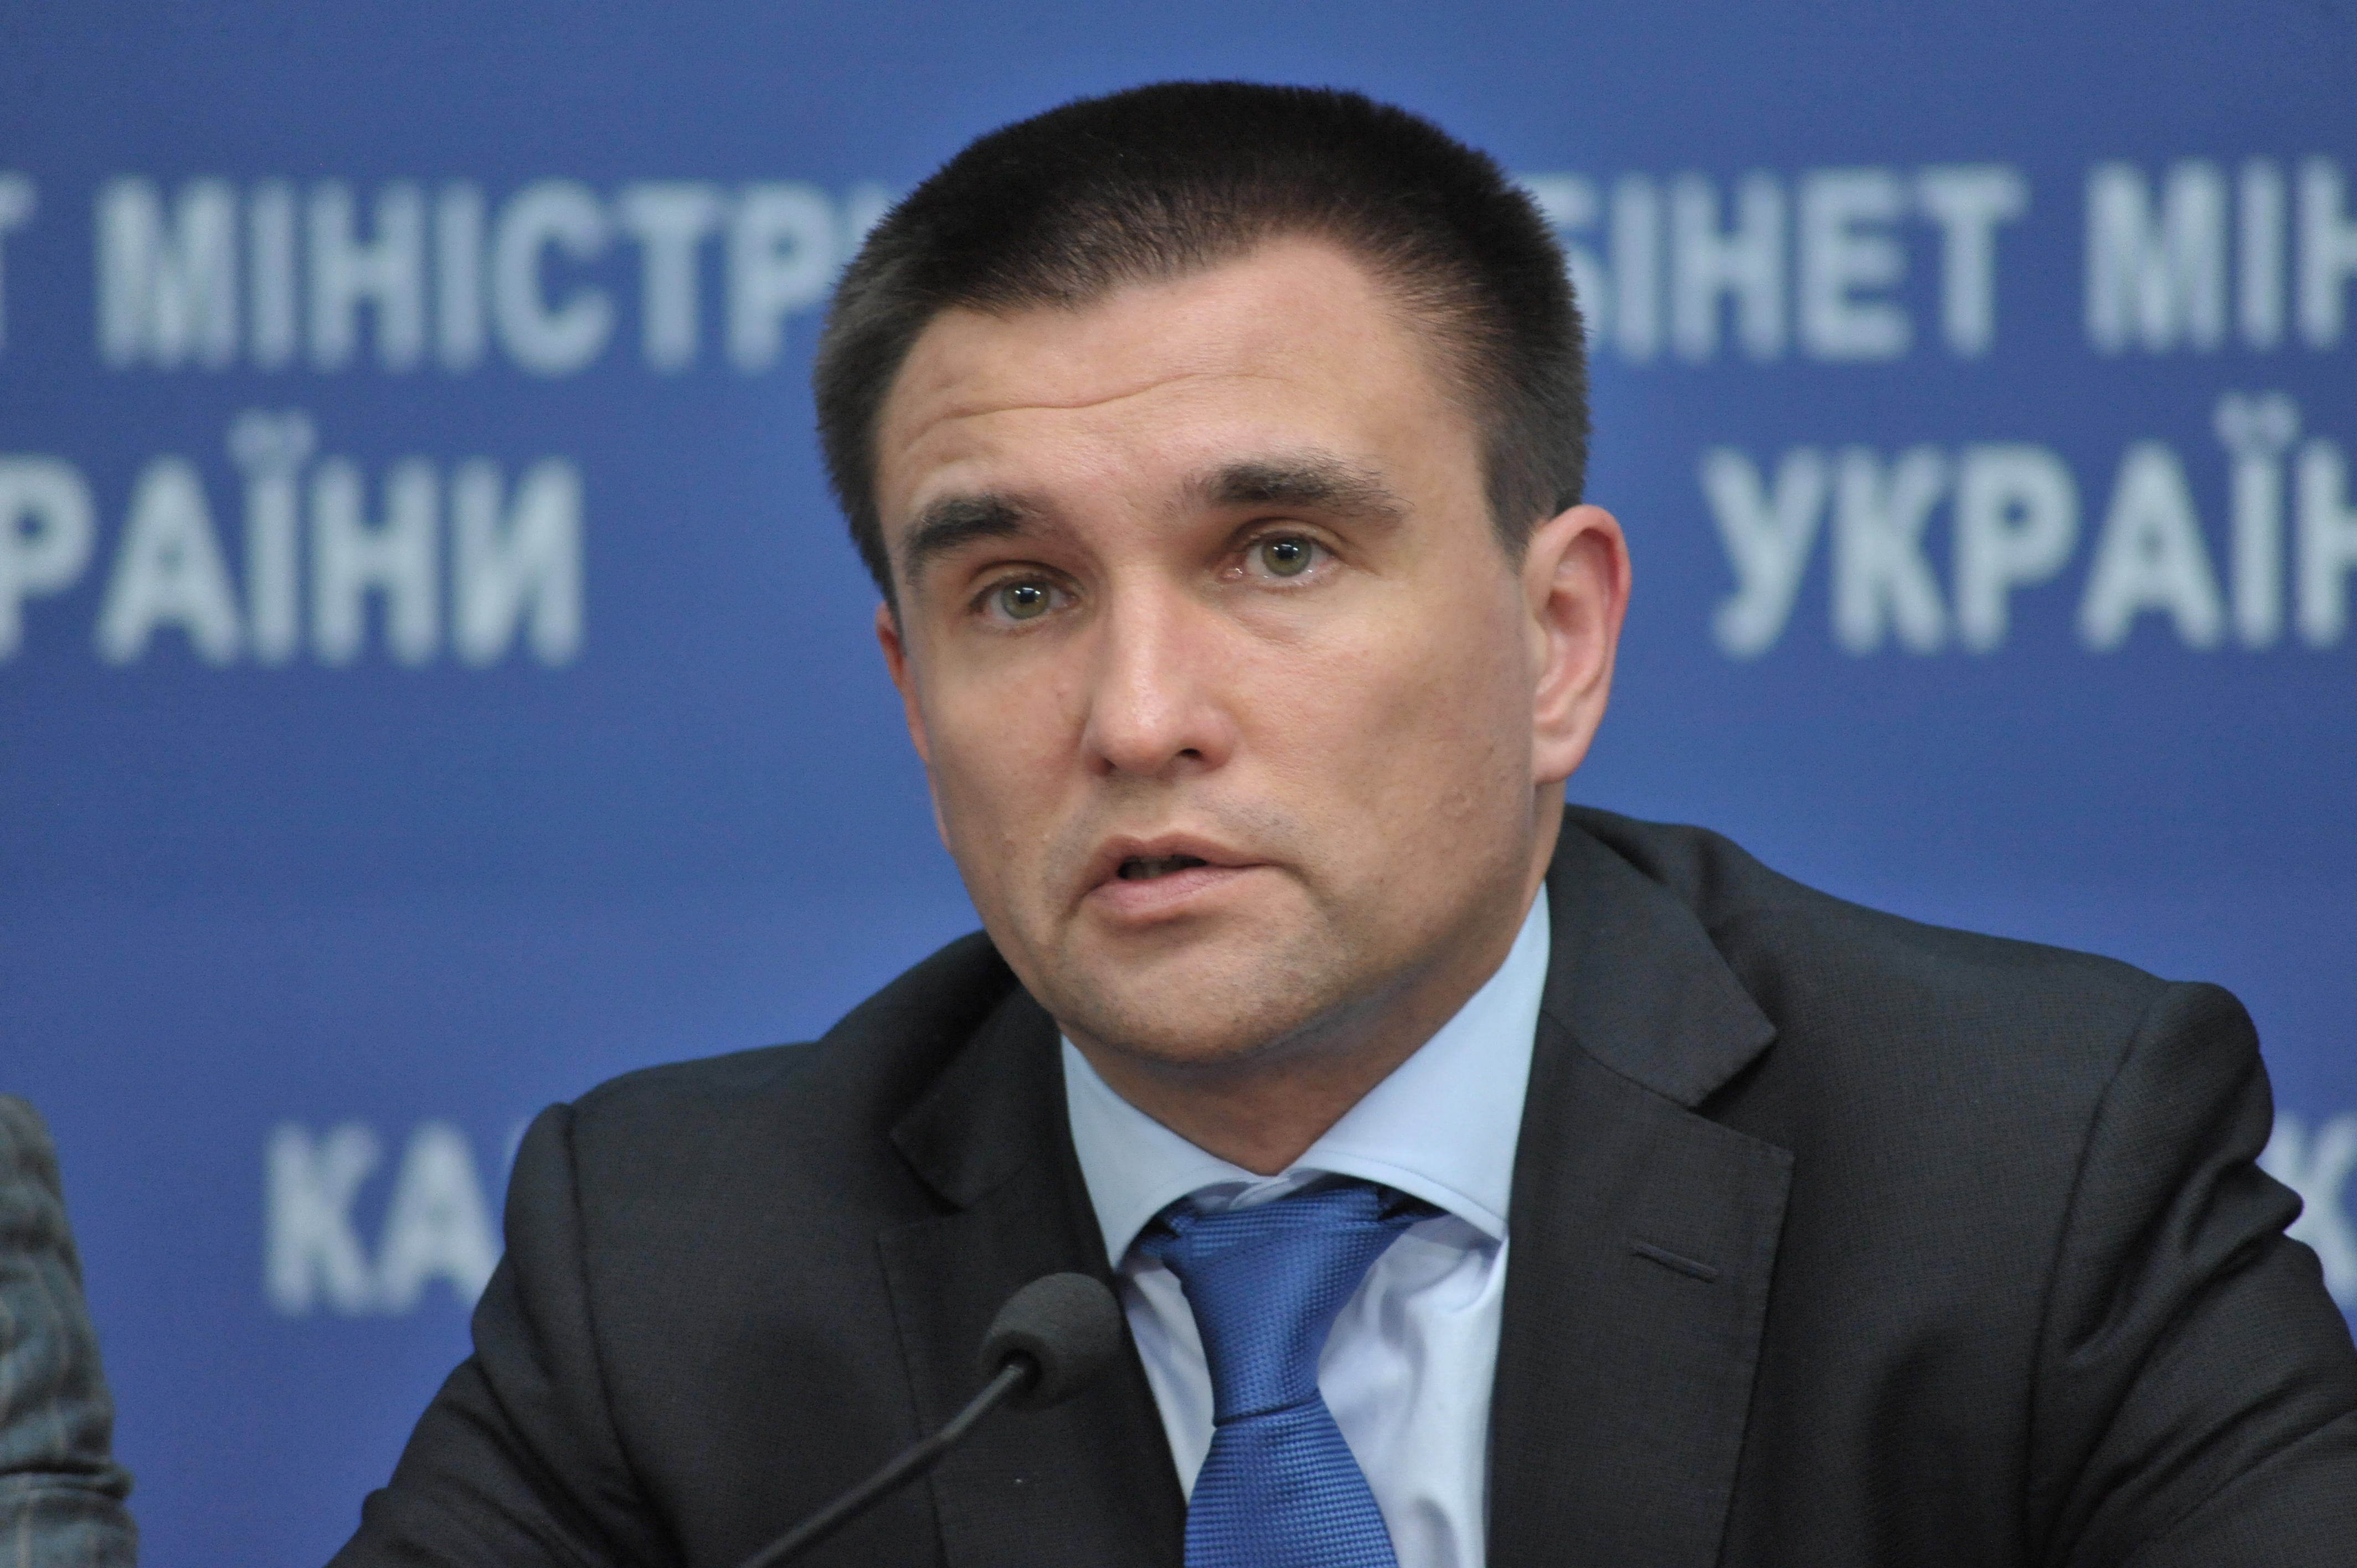 Мы настроены решительно: Украина приостановит работу в ПАСЕ в том случае, если полномочия российской делегации будут признаны, – Климкин